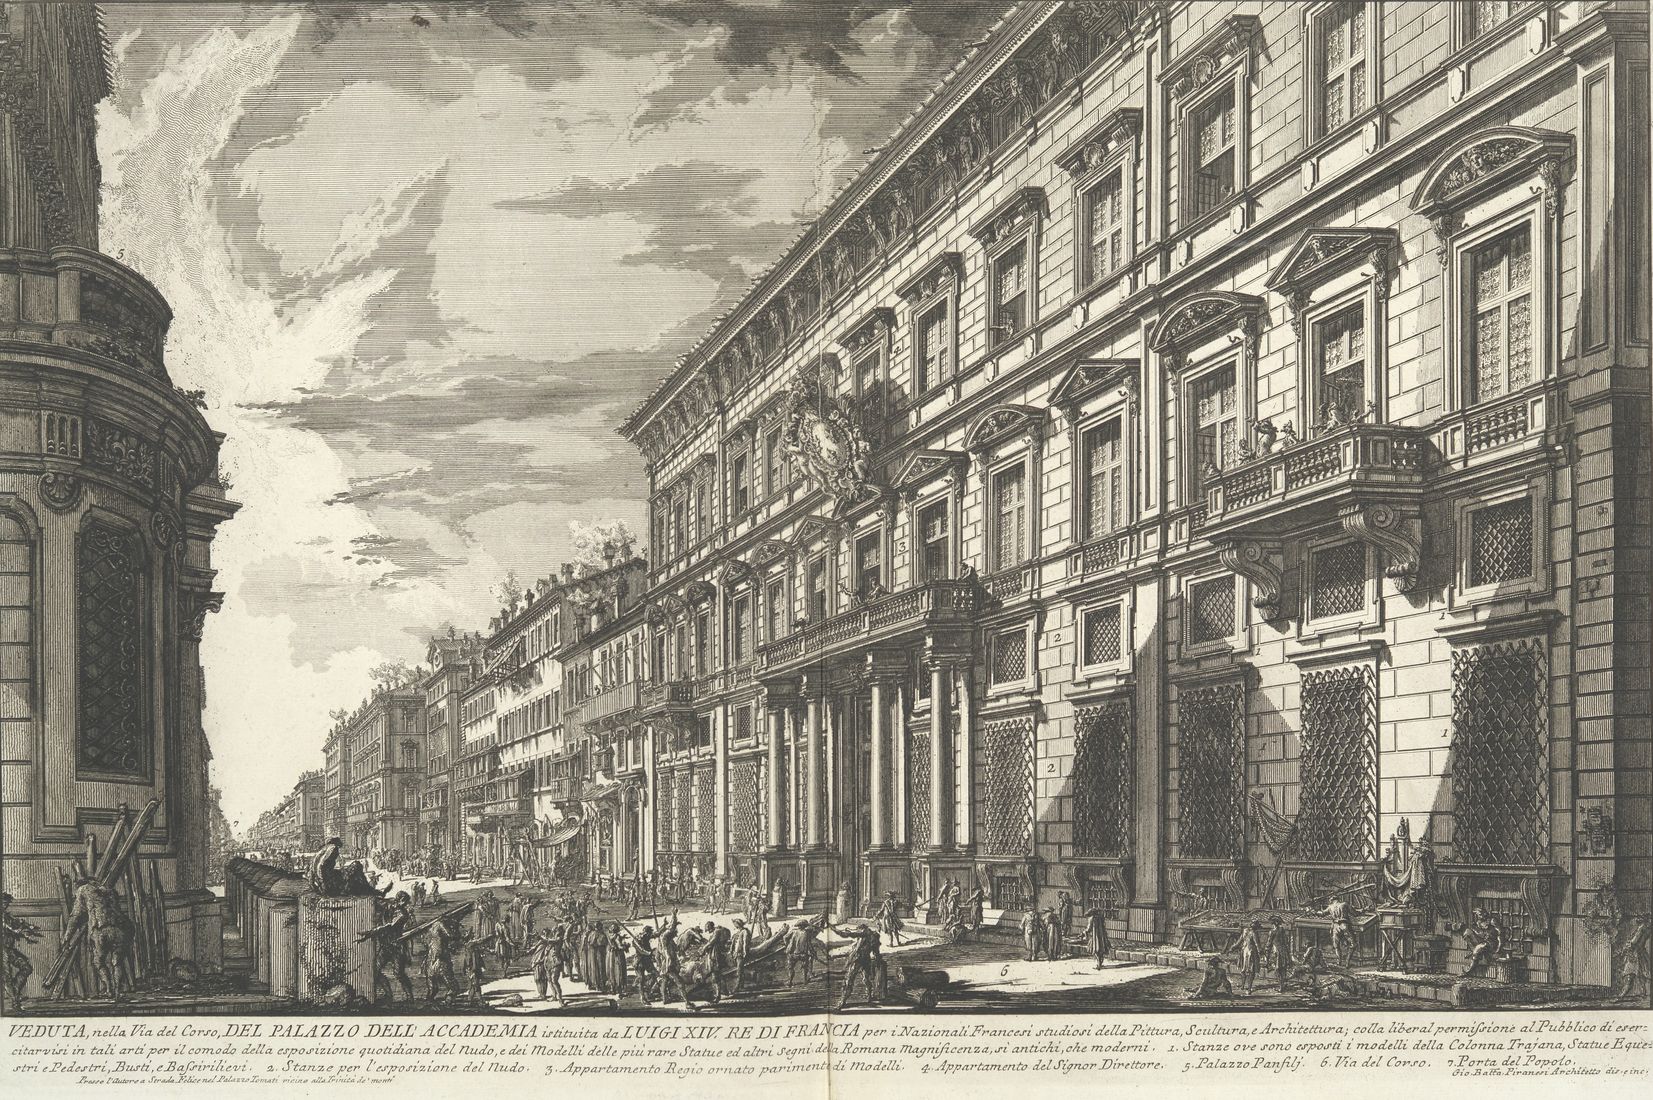 Le palais Mancini à RomeGiovanni Battista Piranesia

Le palais Mancini a accueilli les artistes en formation de 1725 à 1793
